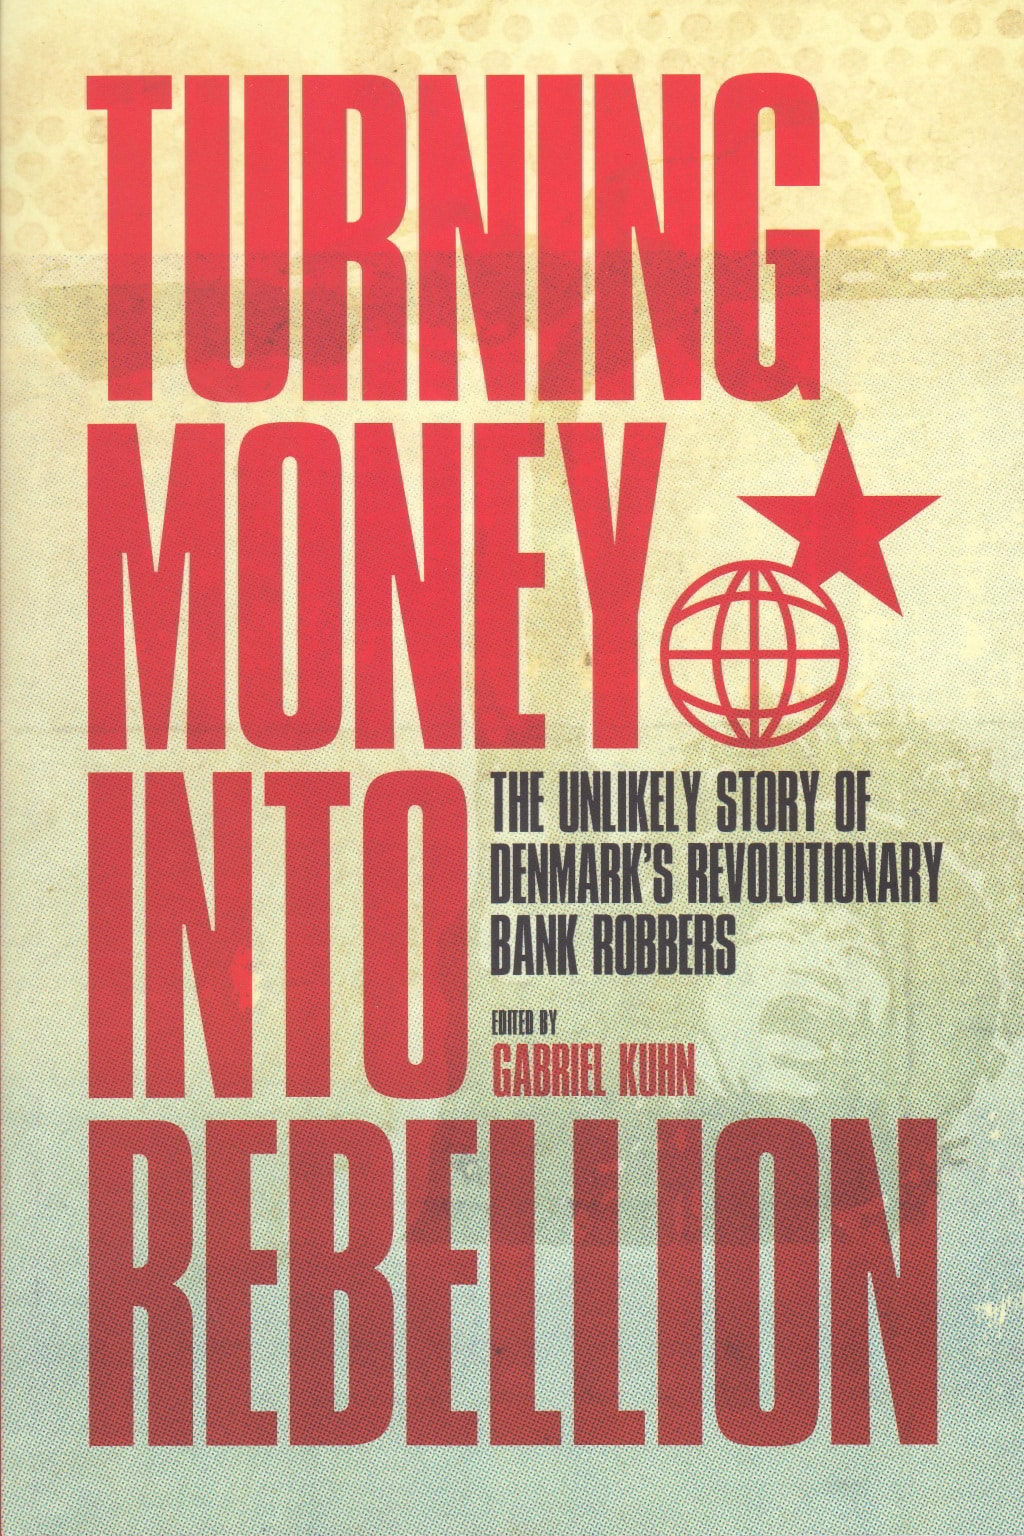 Turning Money into Rebellion. Forsiden